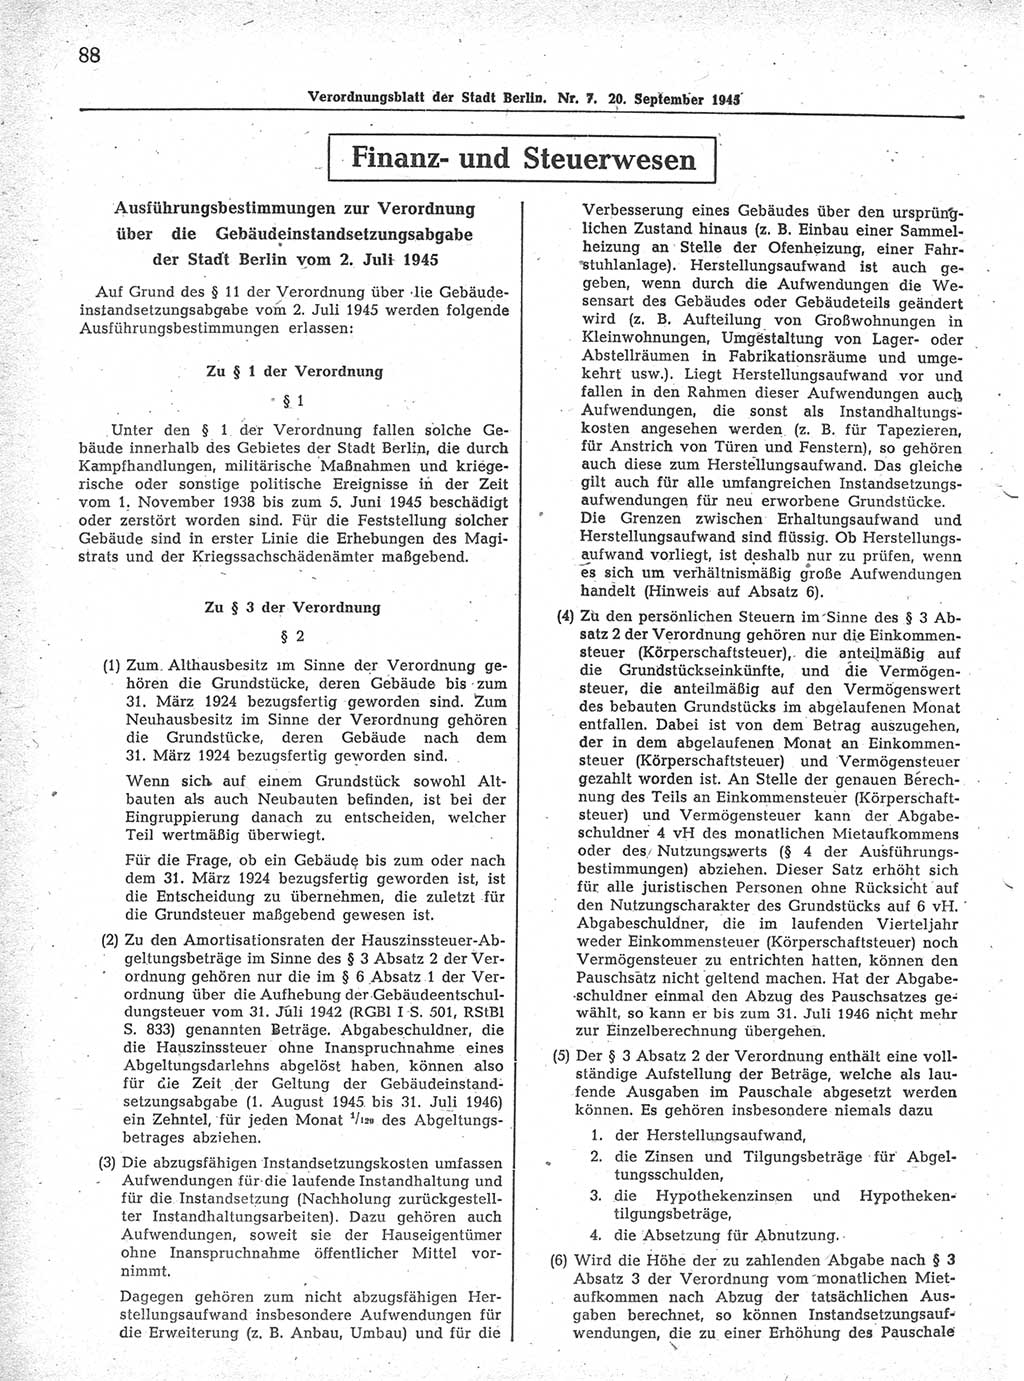 Verordnungsblatt (VOBl.) der Stadt Berlin 1945, Seite 88 (VOBl. Bln. 1945, S. 88)